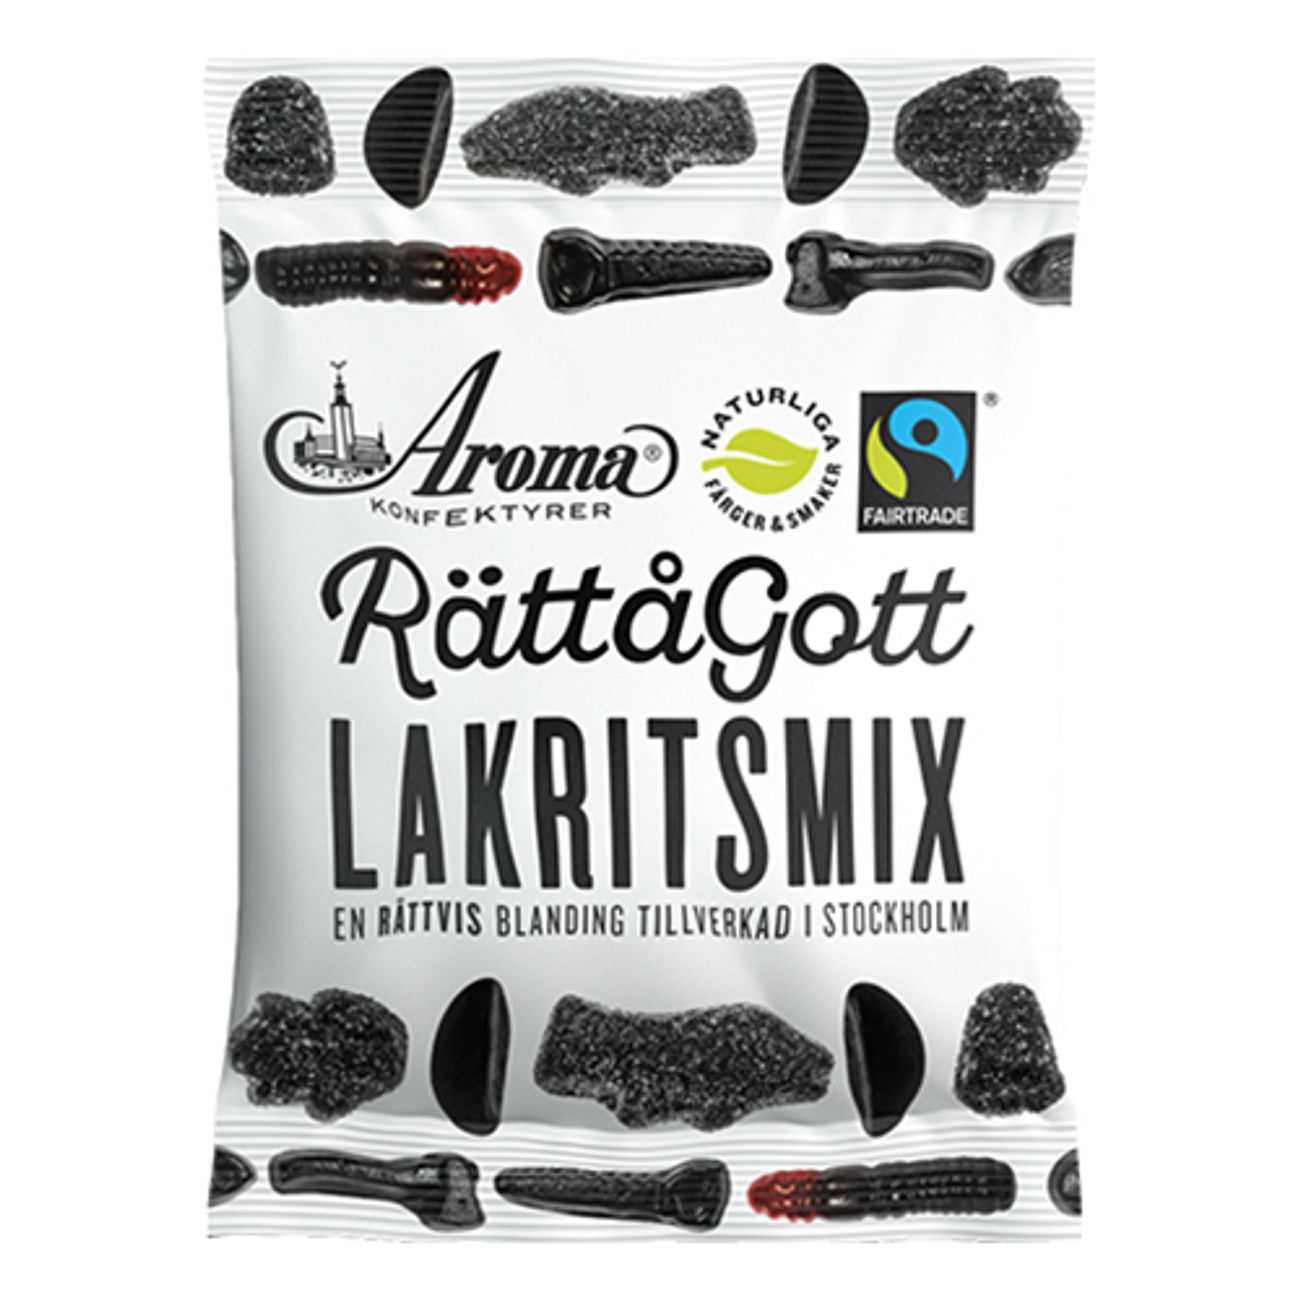 rattagott-lakritsmix-1